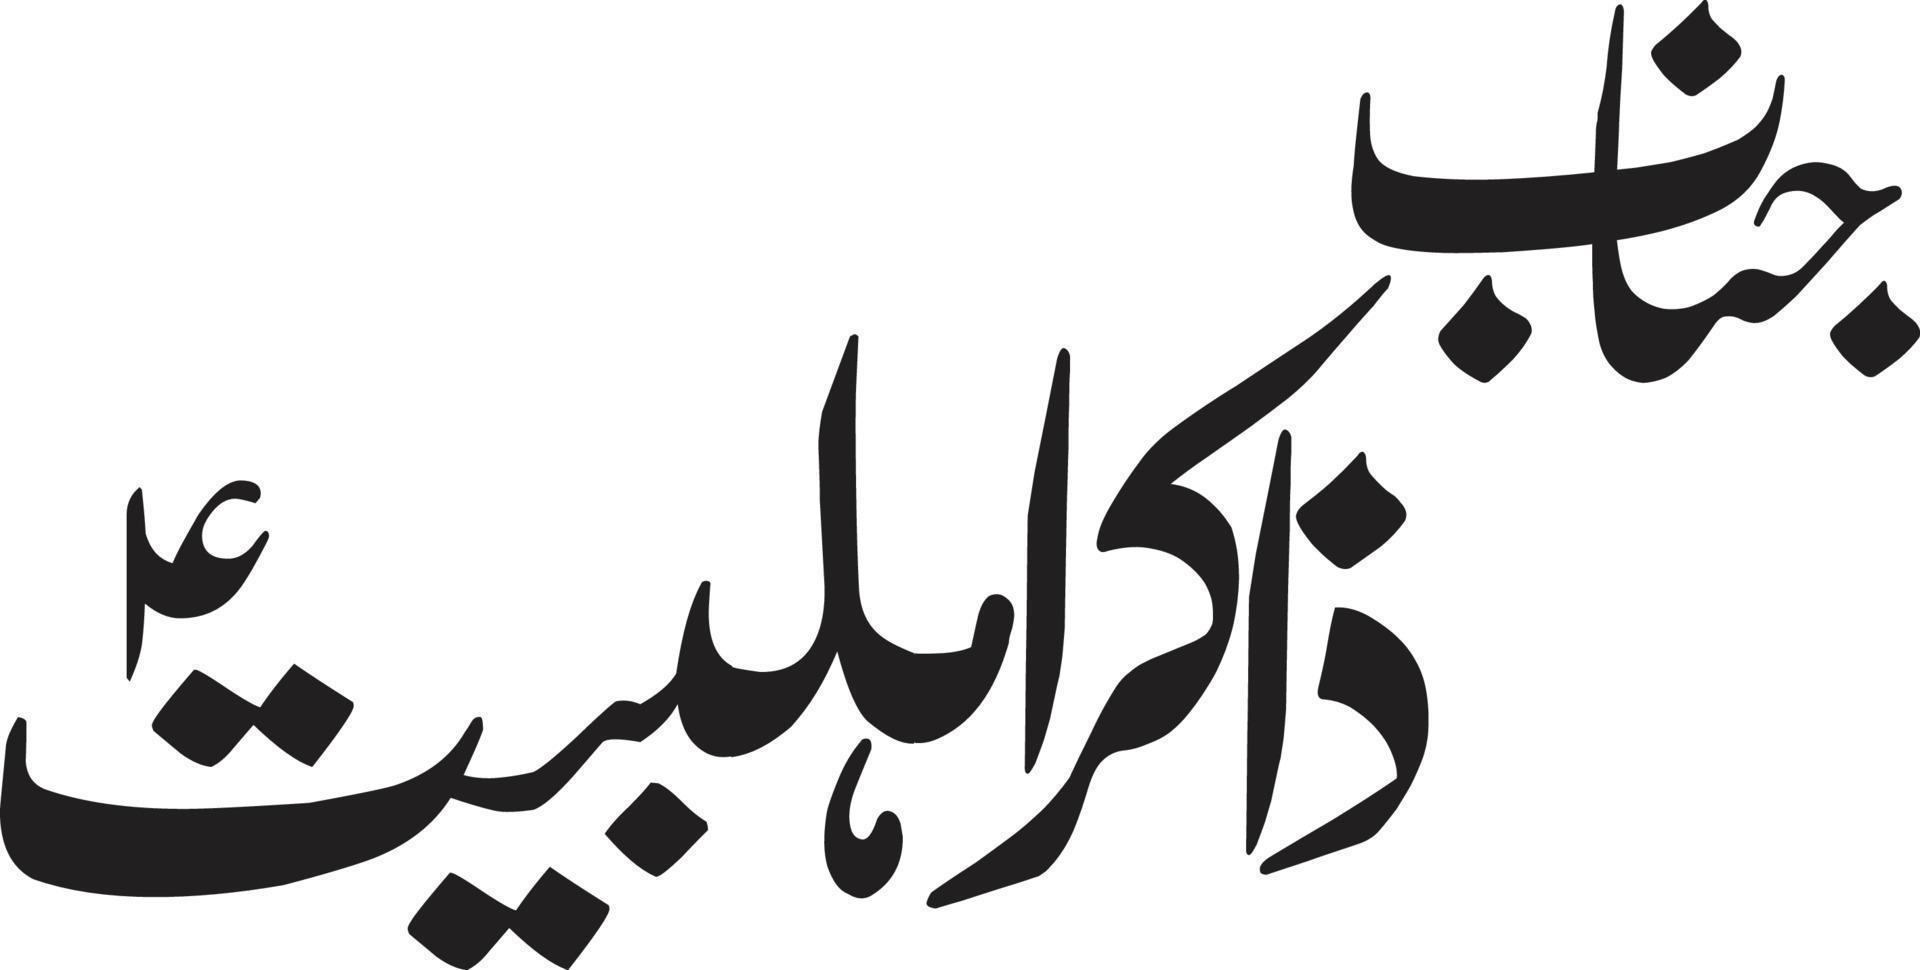 janab zakir ahlbrayt título islámico urdu caligrafía árabe vector libre